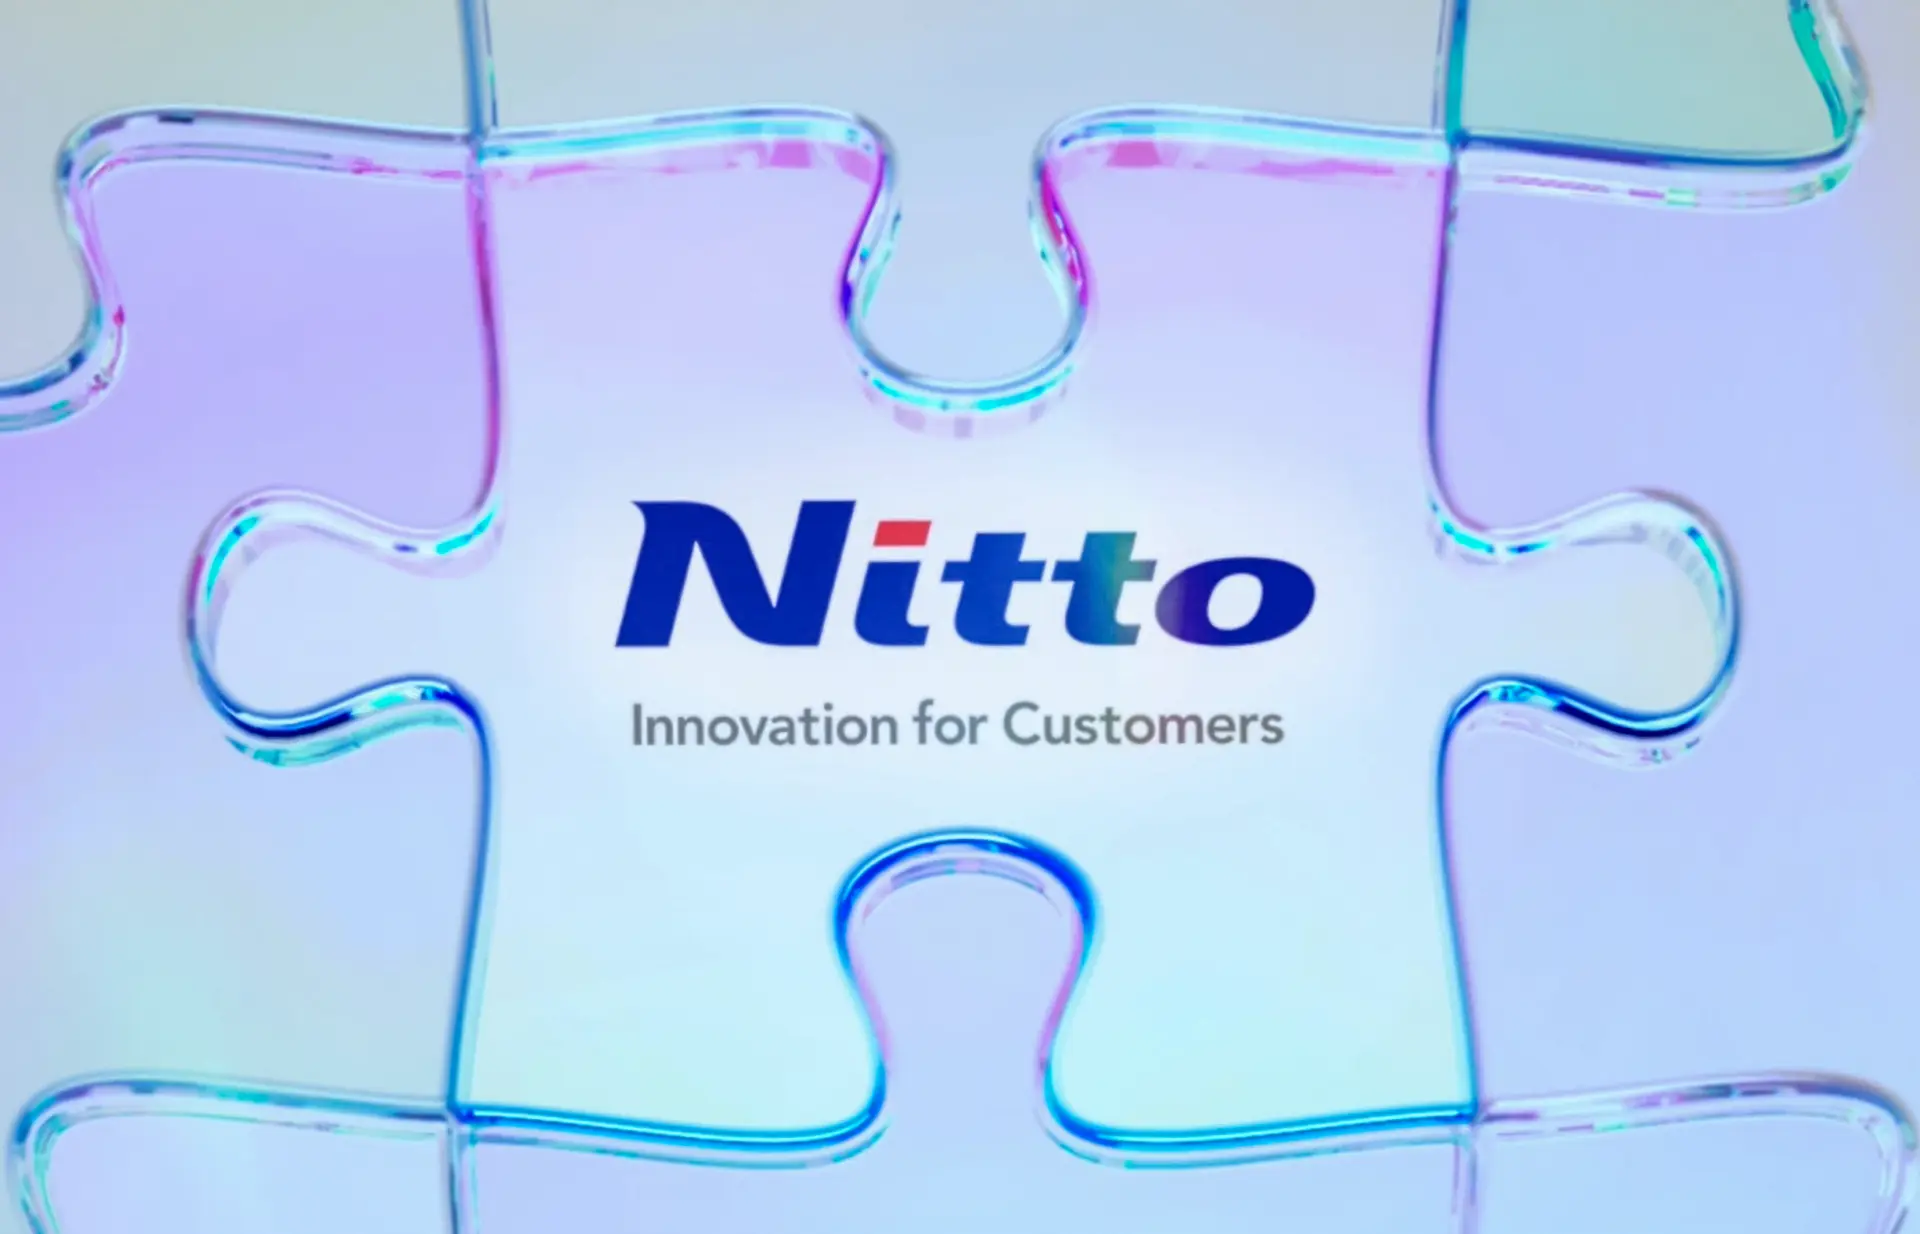 중기 경영 계획 "Nitto for Everyone 2025"